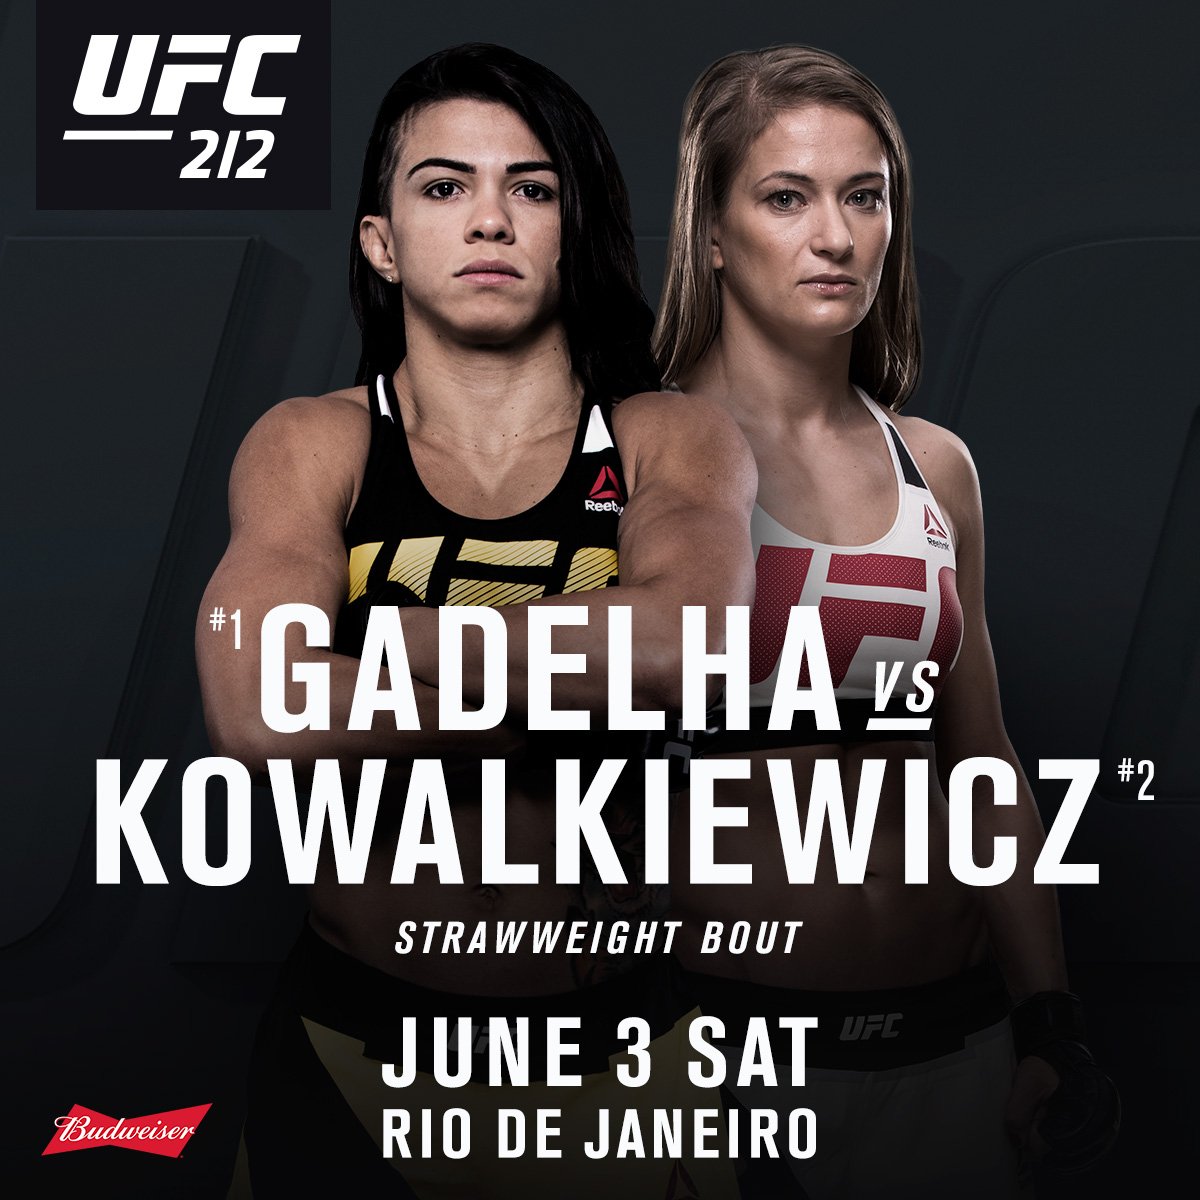 ICYMI: What a fight! Gadelha vs Kowalkiewicz at #UFC212